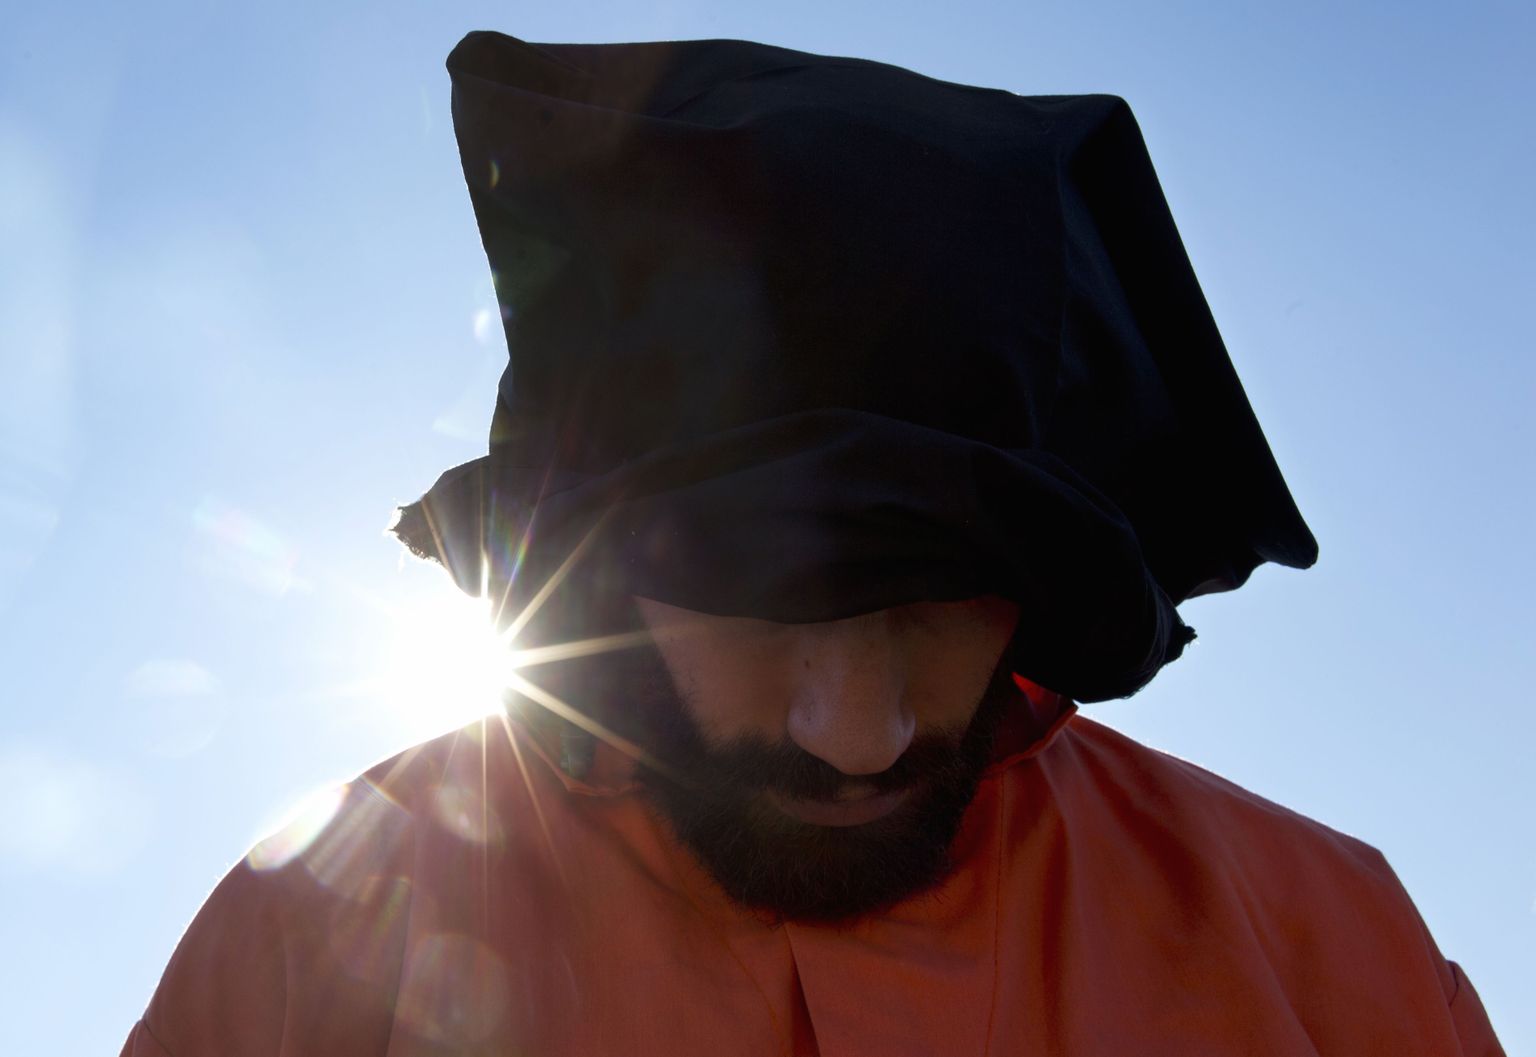 Sümboolsesse Guantanamo vangirüüsse riietunud meeleavaldaja.